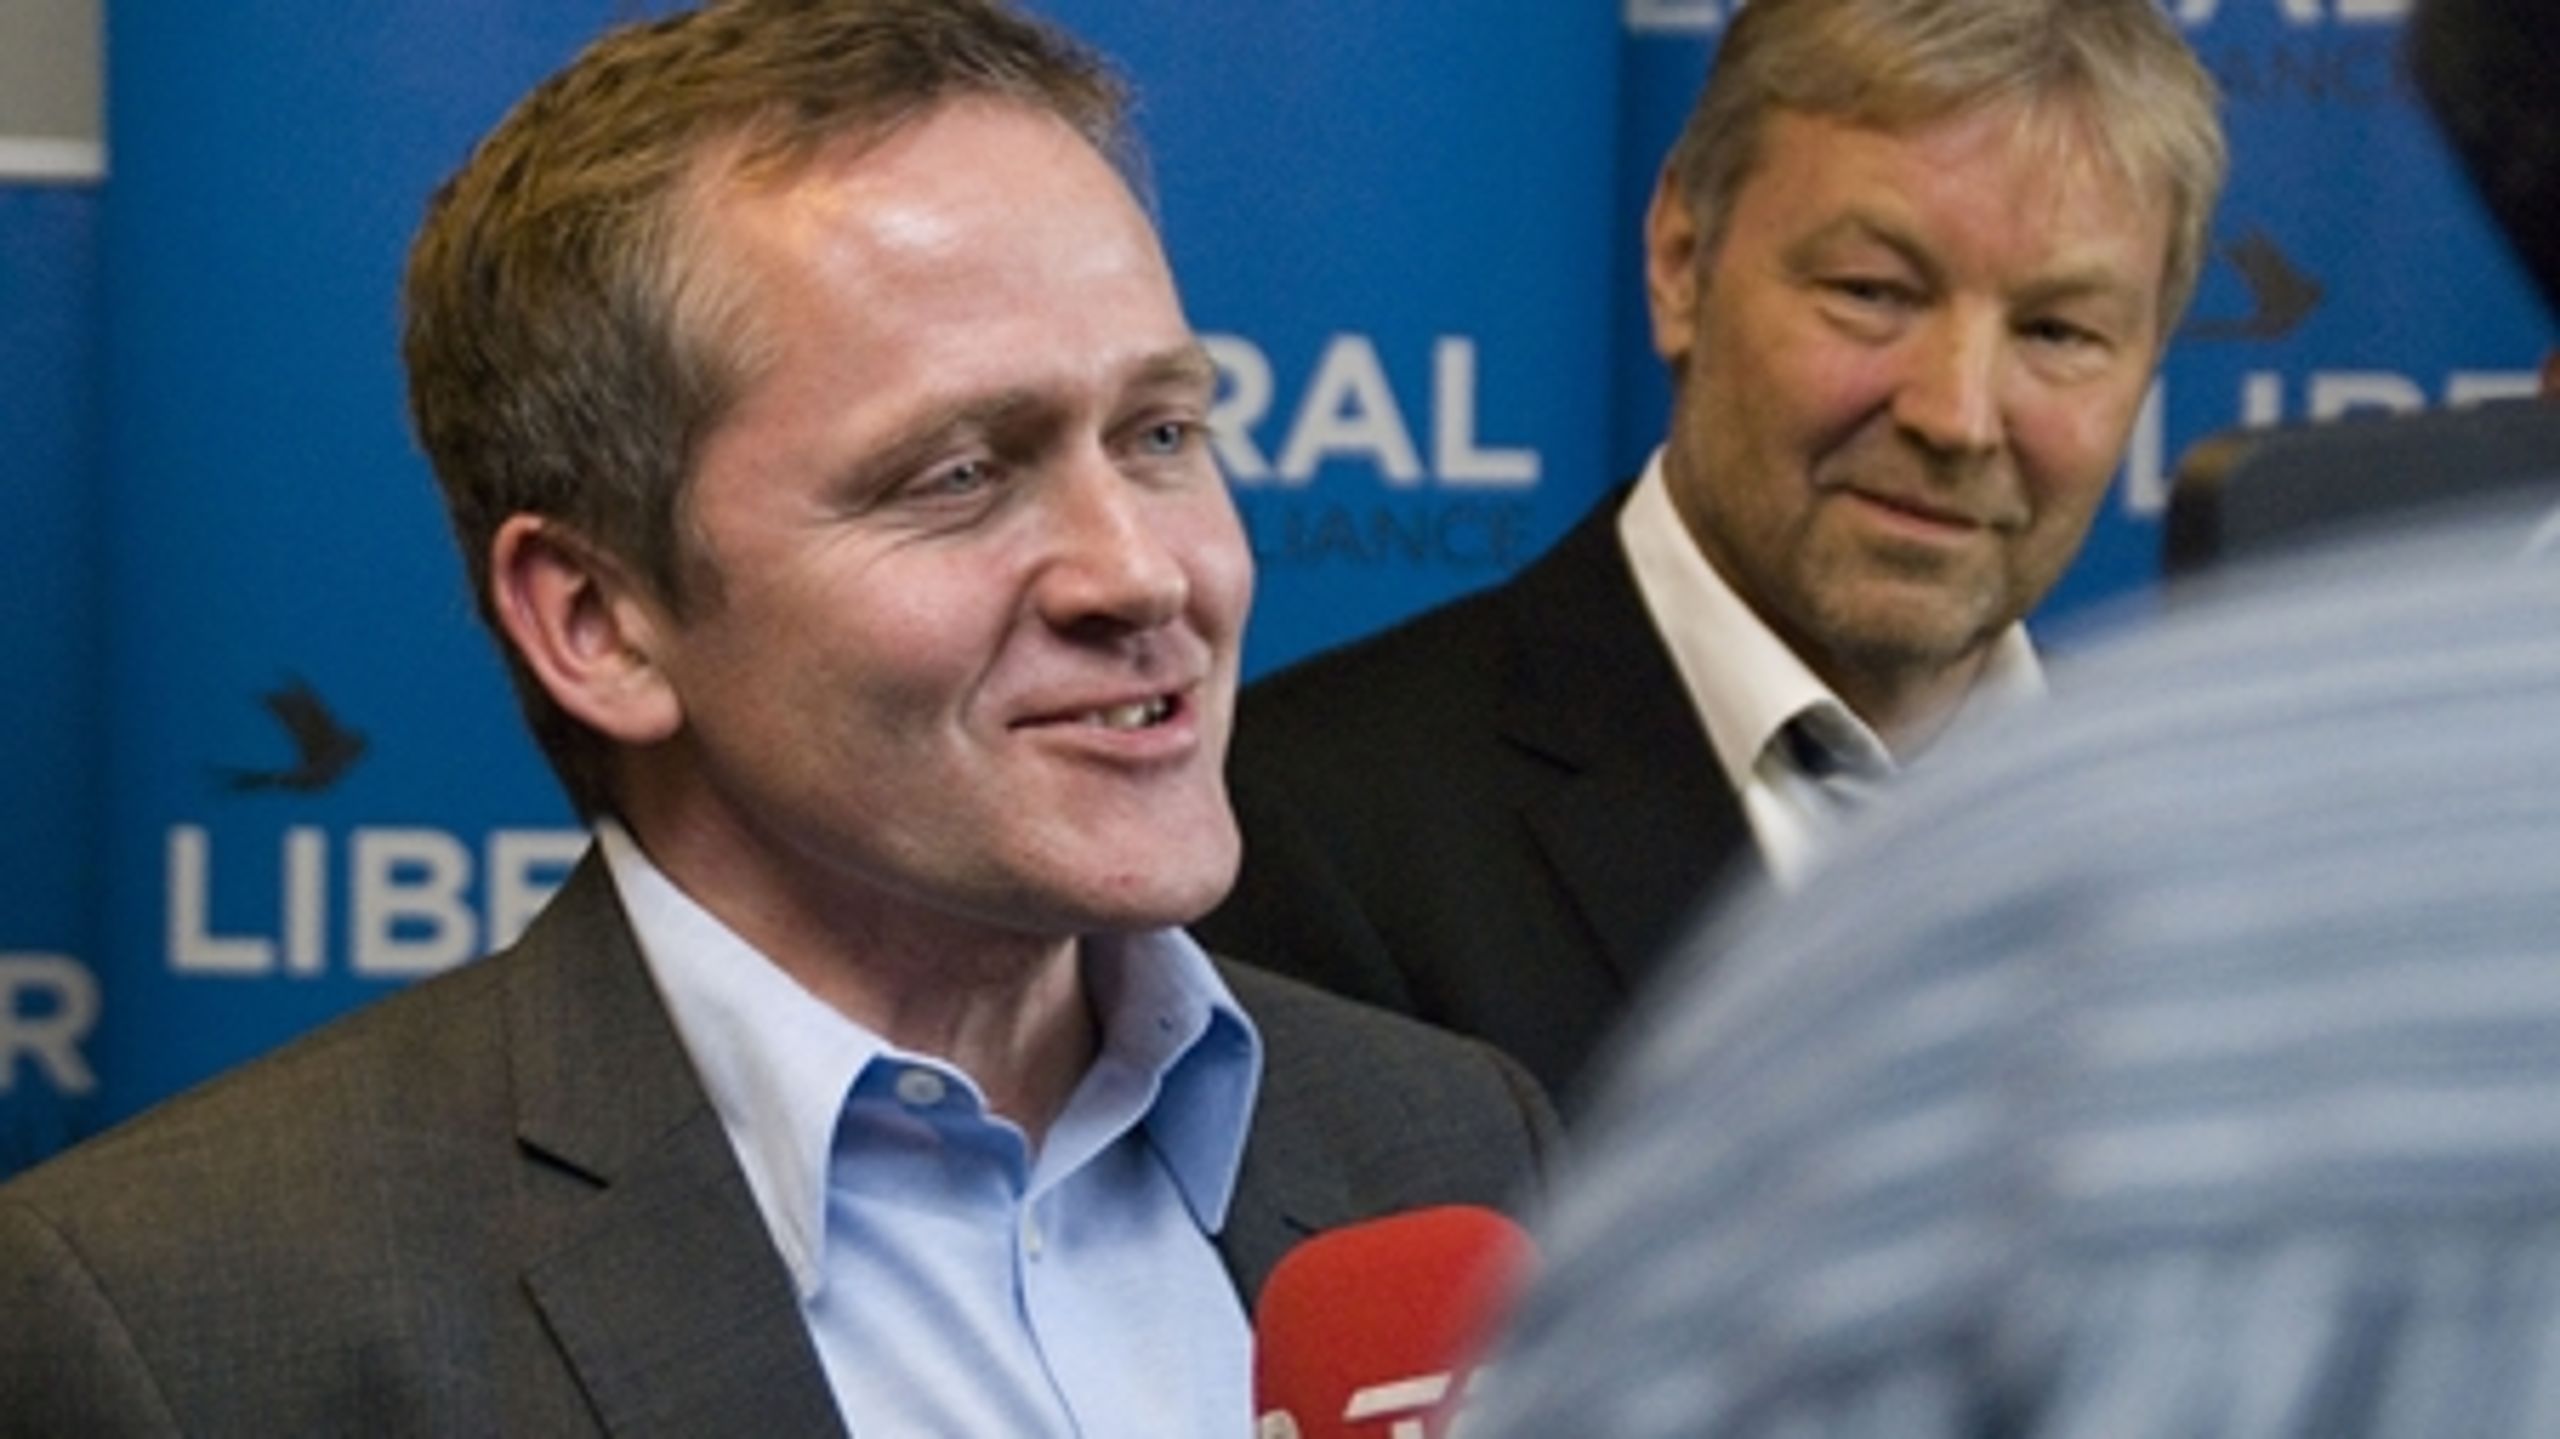 Anders Samuelsen gjorde det umulige og fik Liberal Alliance i Folketinget med 9 mandater.